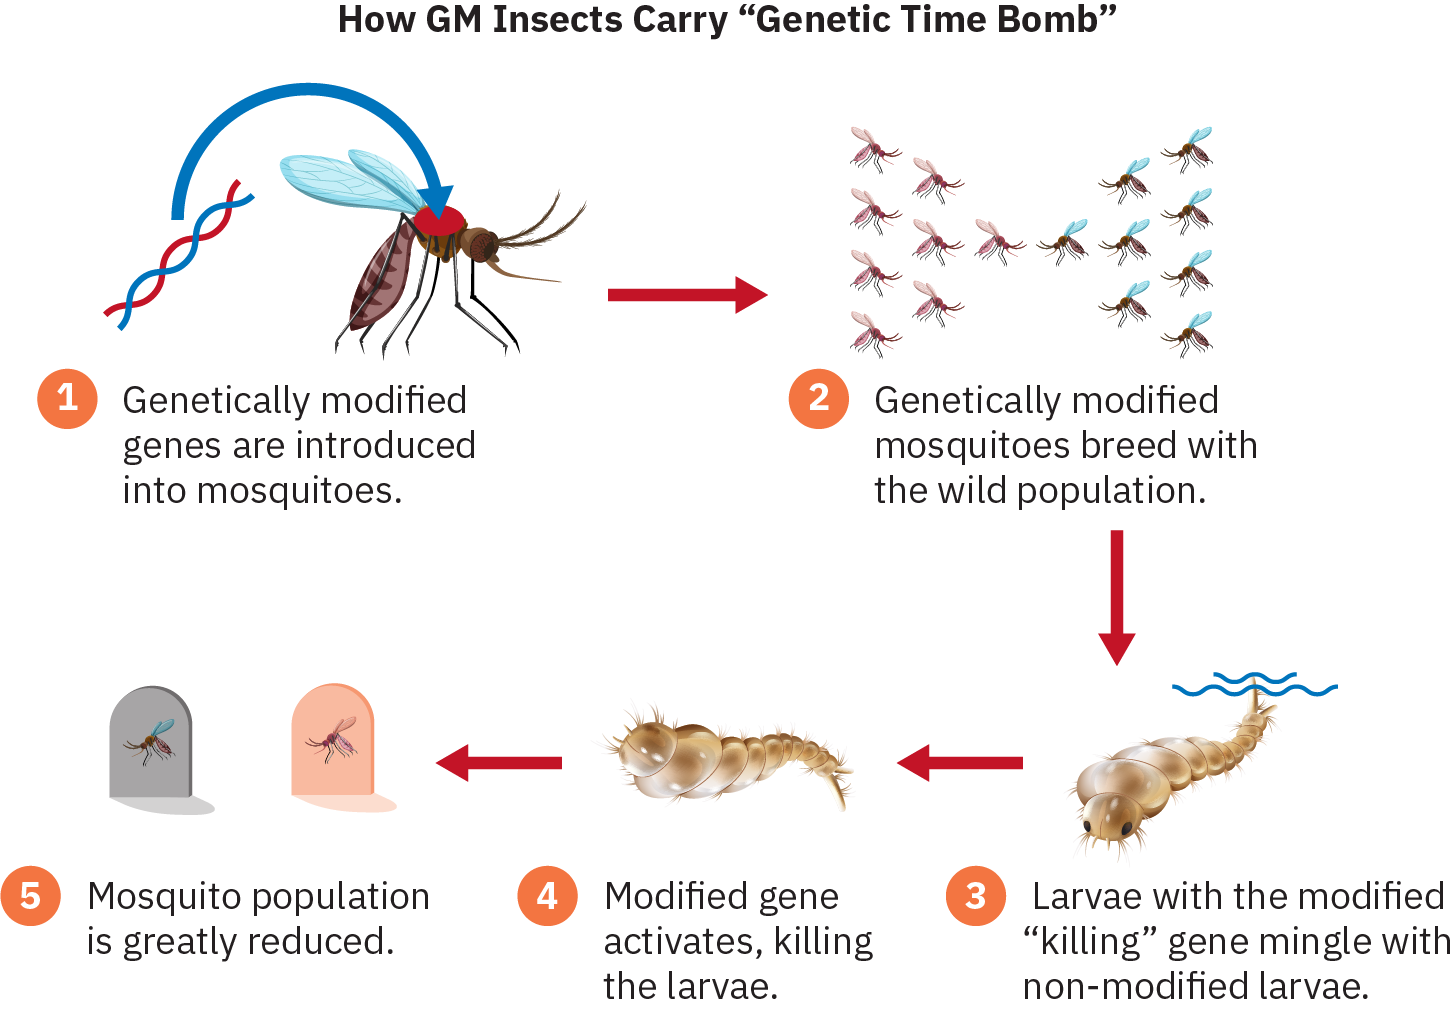 Infographie illustrant les étapes suivantes : 1) Des gènes génétiquement modifiés sont introduits chez les moustiques. 2) Les moustiques génétiquement modifiés se reproduisent dans la population sauvage. 3) Les larves dotées du gène « tueur » modifié se mêlent aux larves non modifiées. 4) Le gène modifié s'active, tuant les larves. 5) Population de moustiques est considérablement réduit.